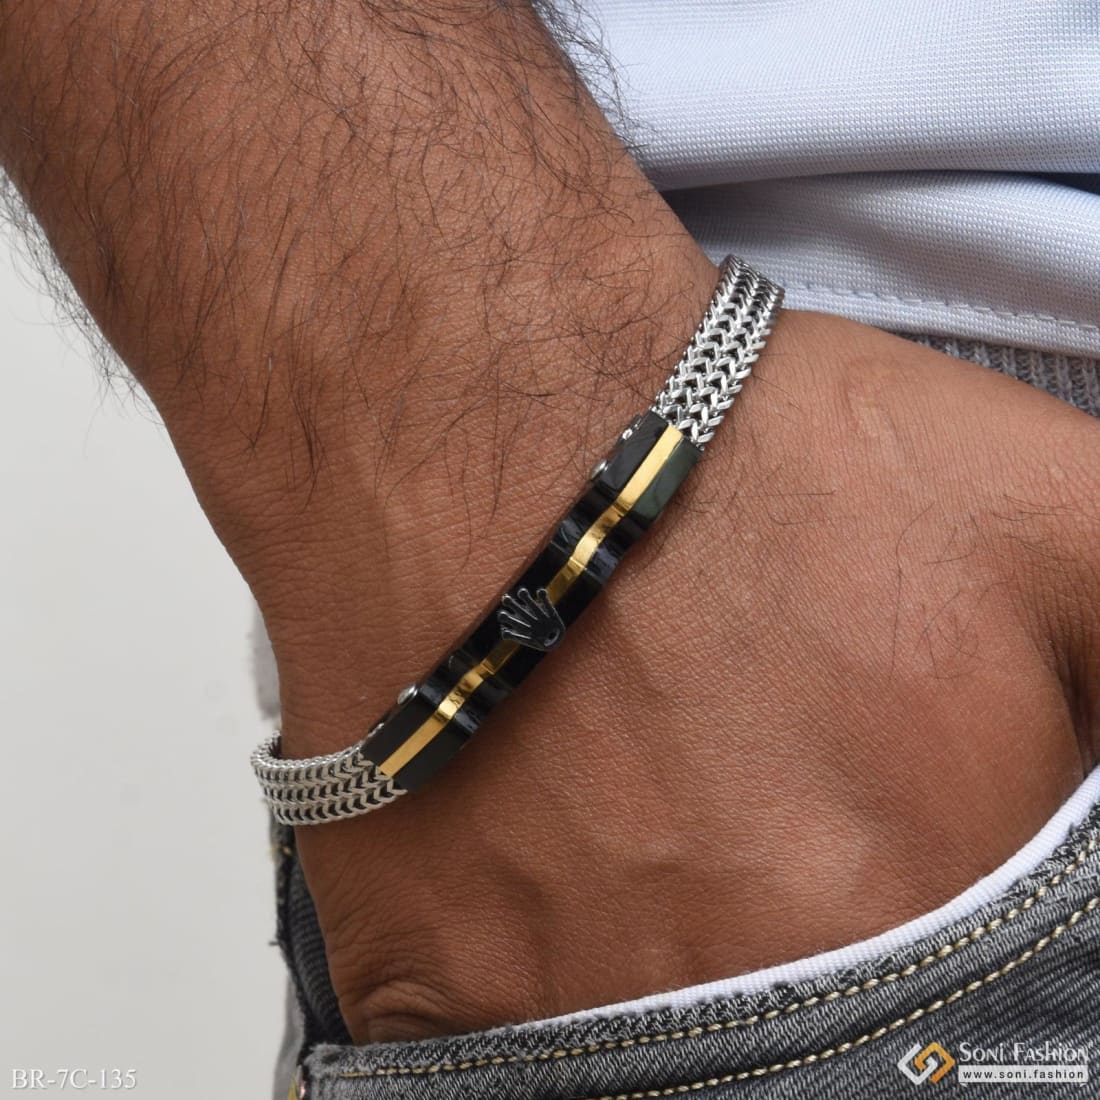 Buy Police Black Bracelet for Men Online At Best Price @ Tata CLiQ